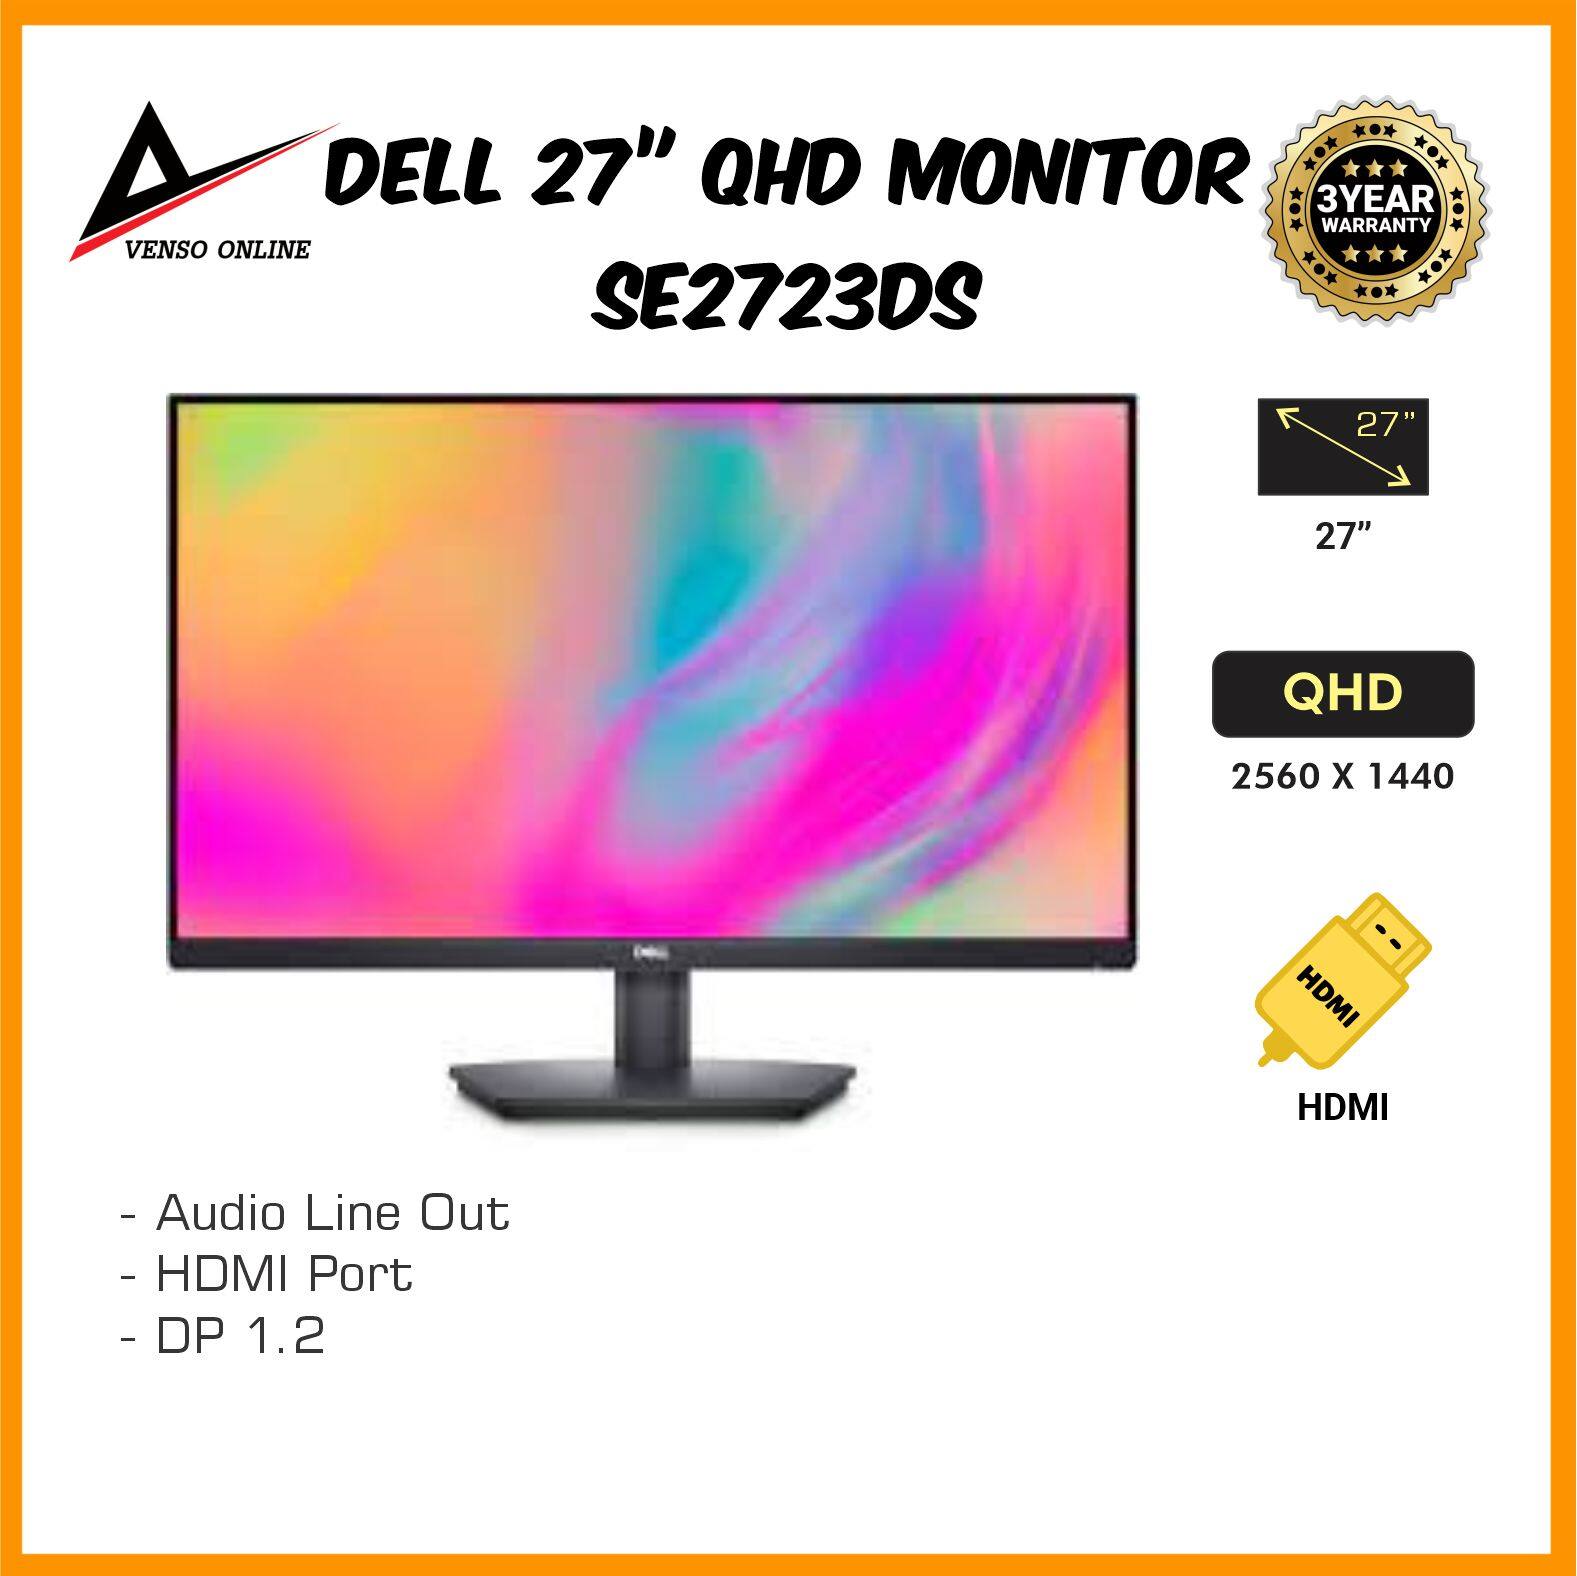 Dell 27 QHD Monitor - SE2723DS | Lazada